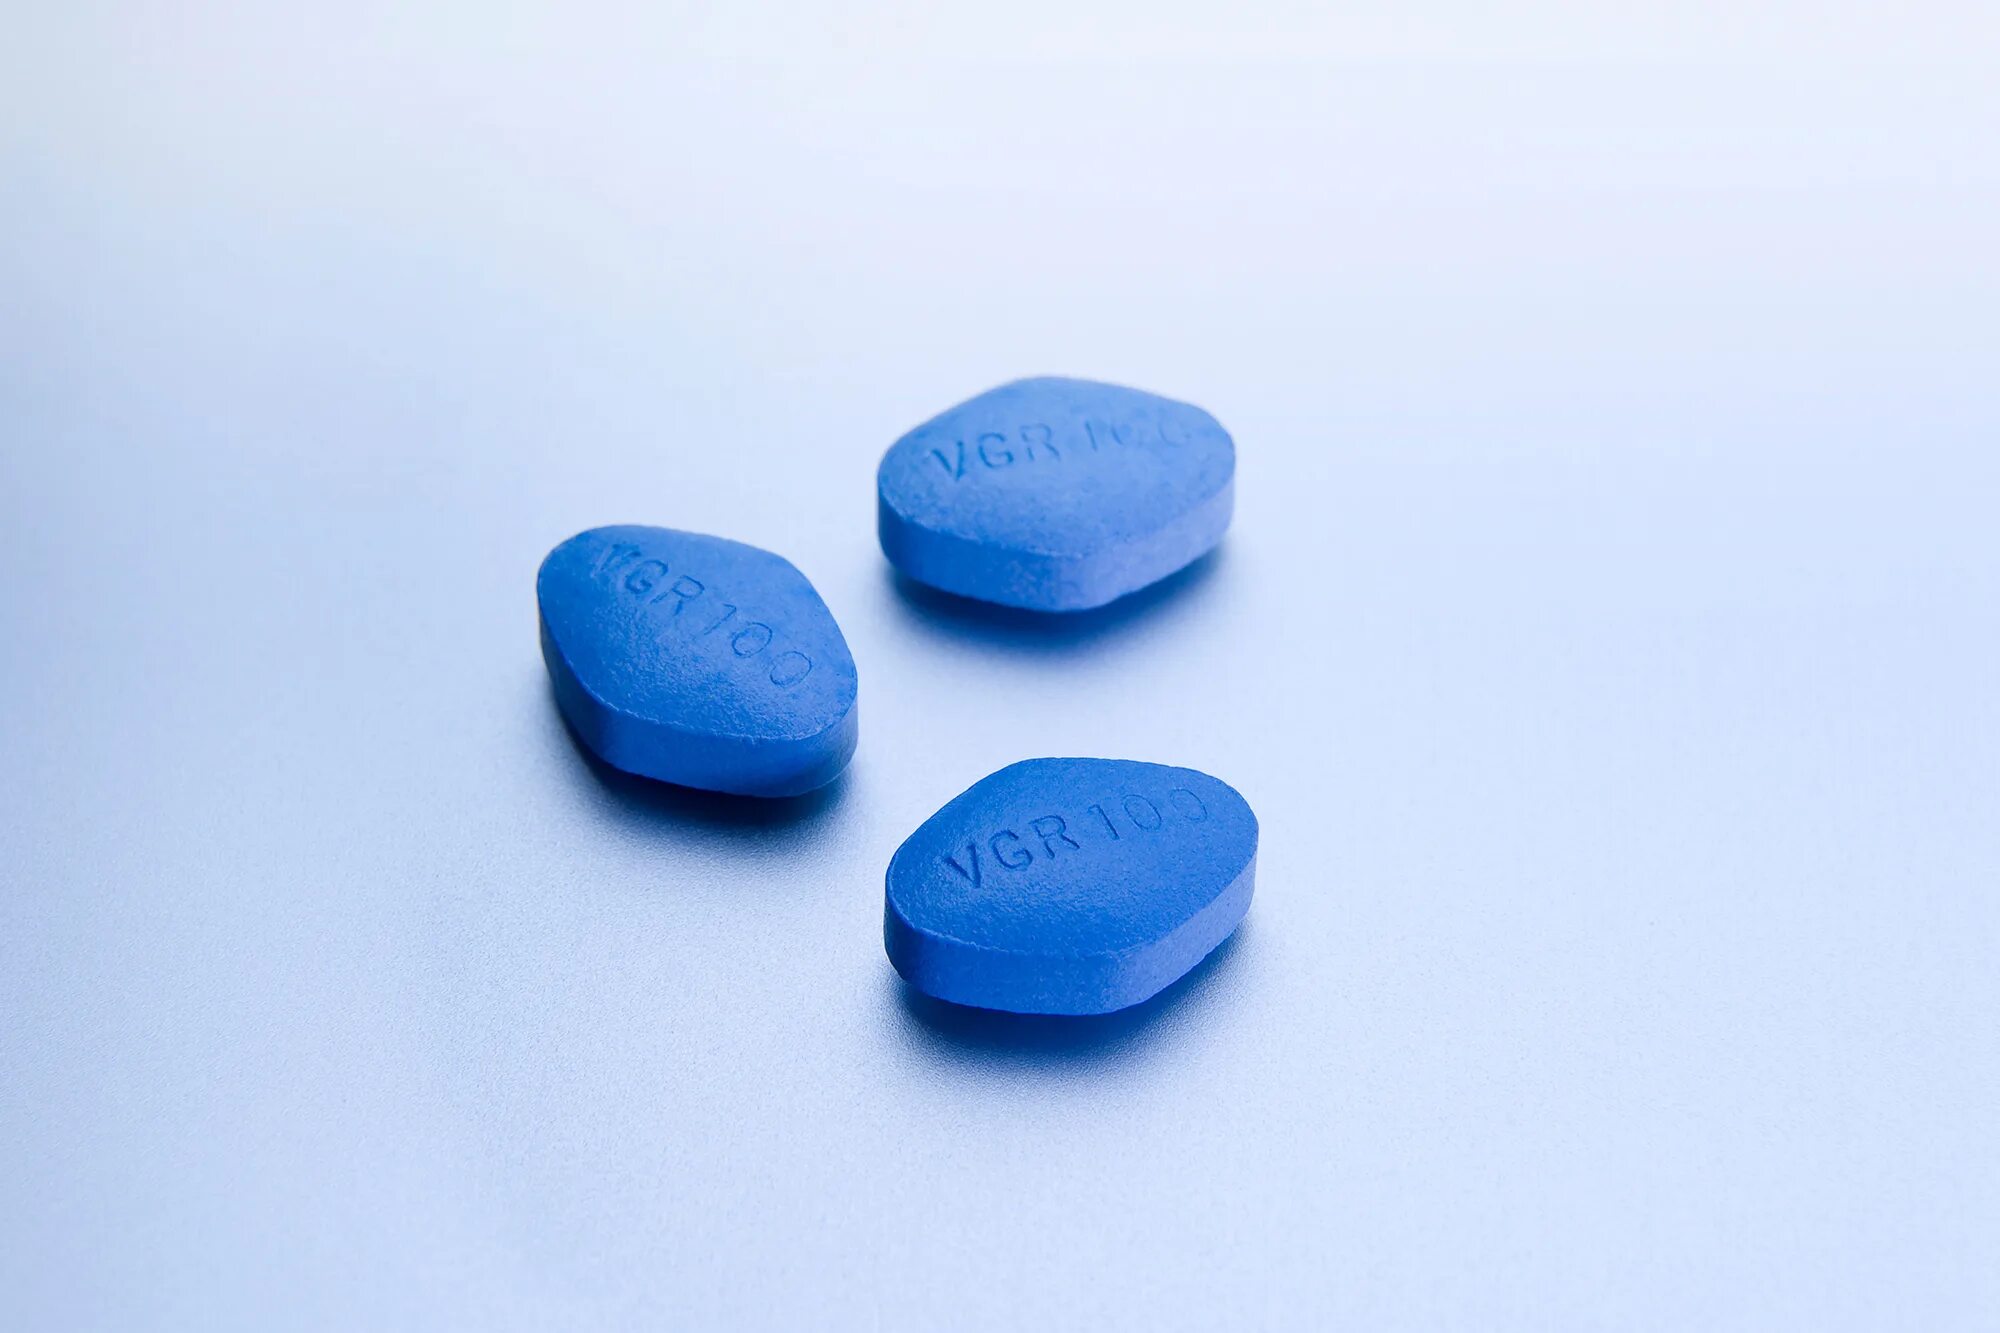 Первая таблетка. Голубые таблетки виагра. Виагра камастил. Камастил силденафил 100 мг. Синяя таблетка 100 мг.